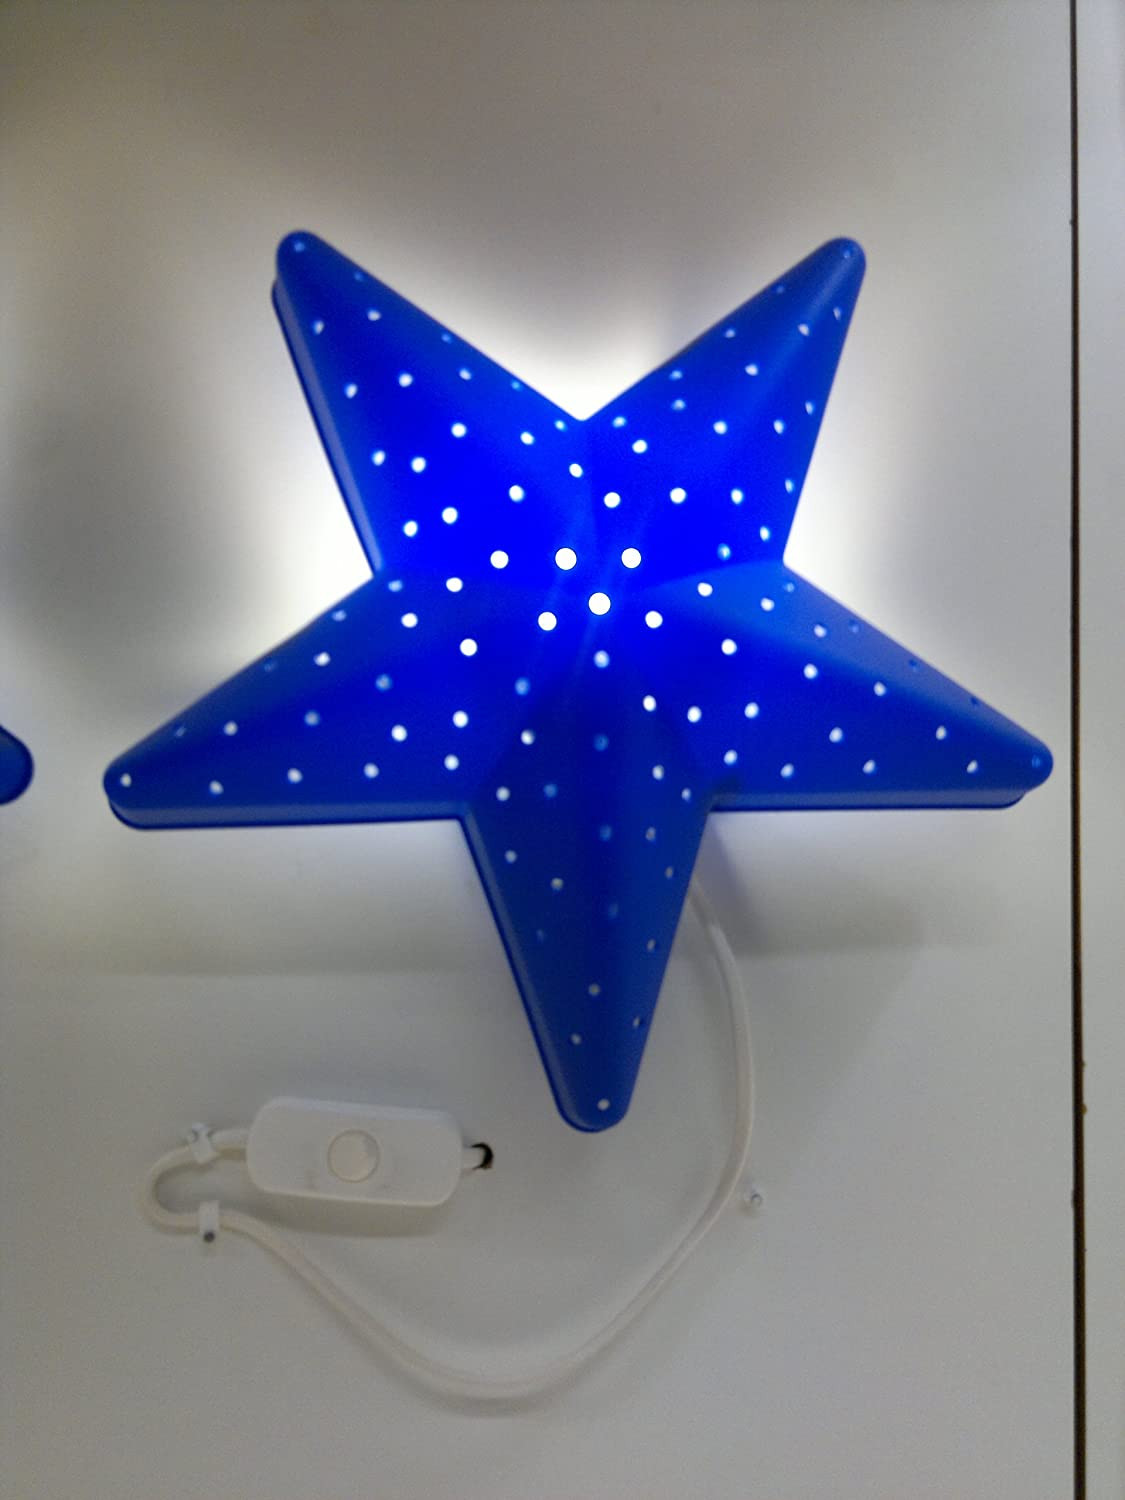 Ikea Bedroom Lighting
 IKEA CHILDREN BLUE STAR BEDROOM WALL LIGHT LAMP